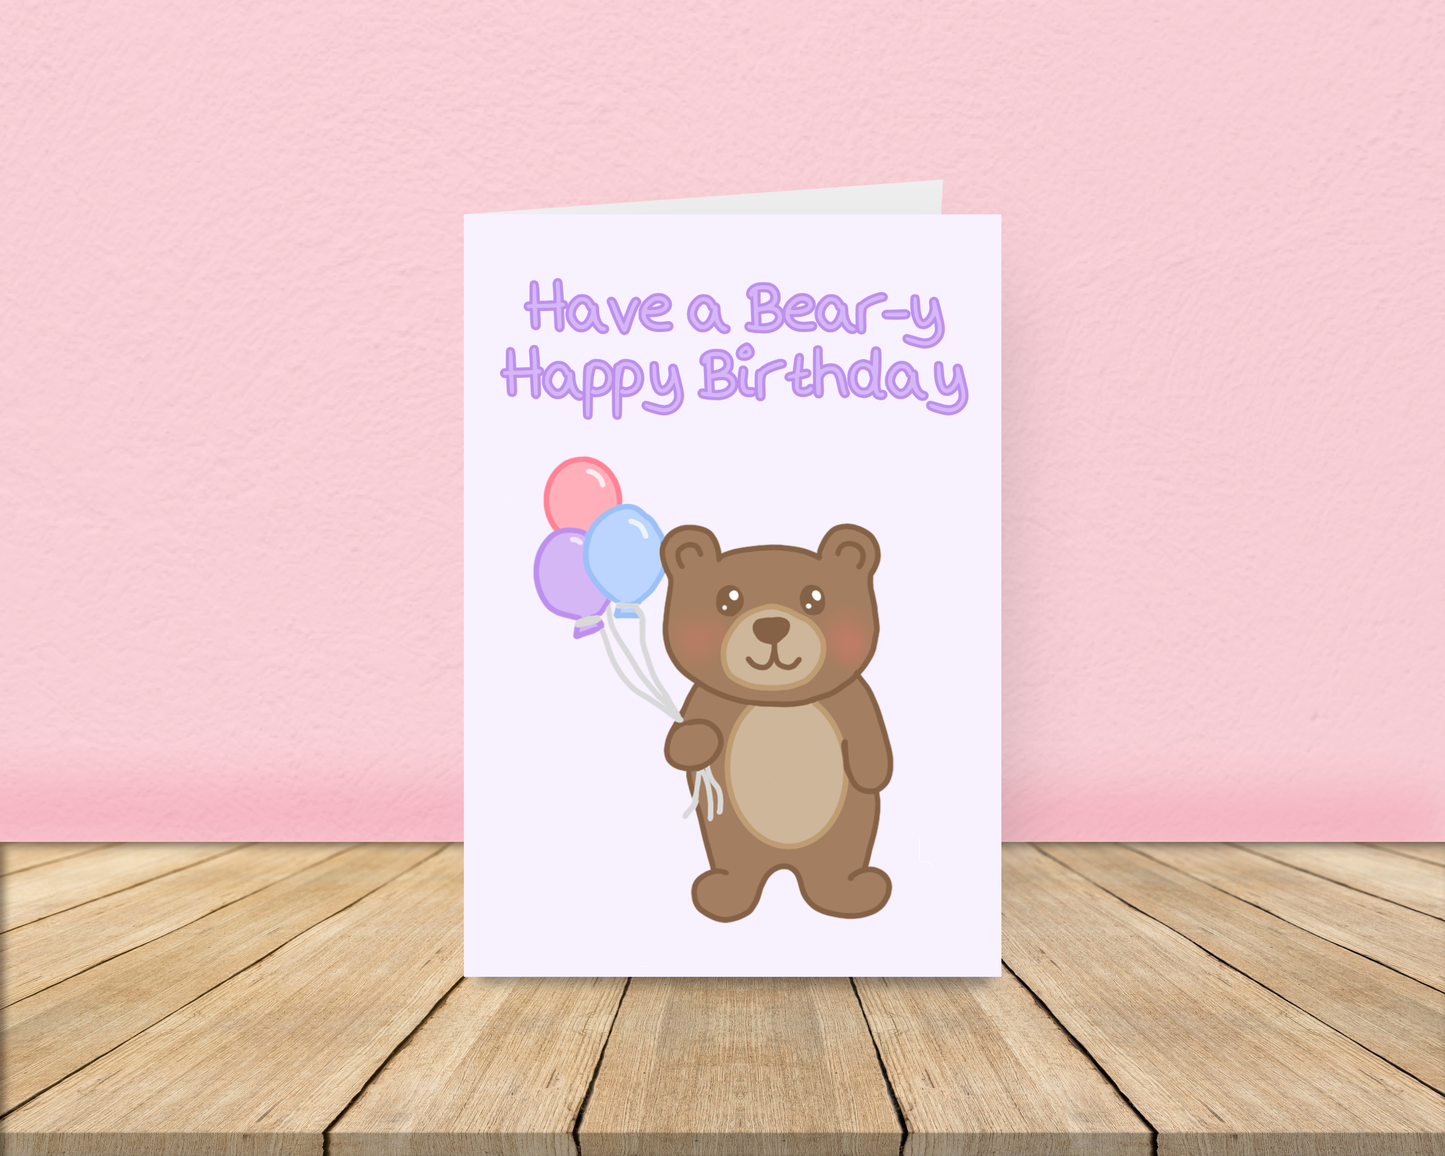 Bear-y Happy Birthday Card